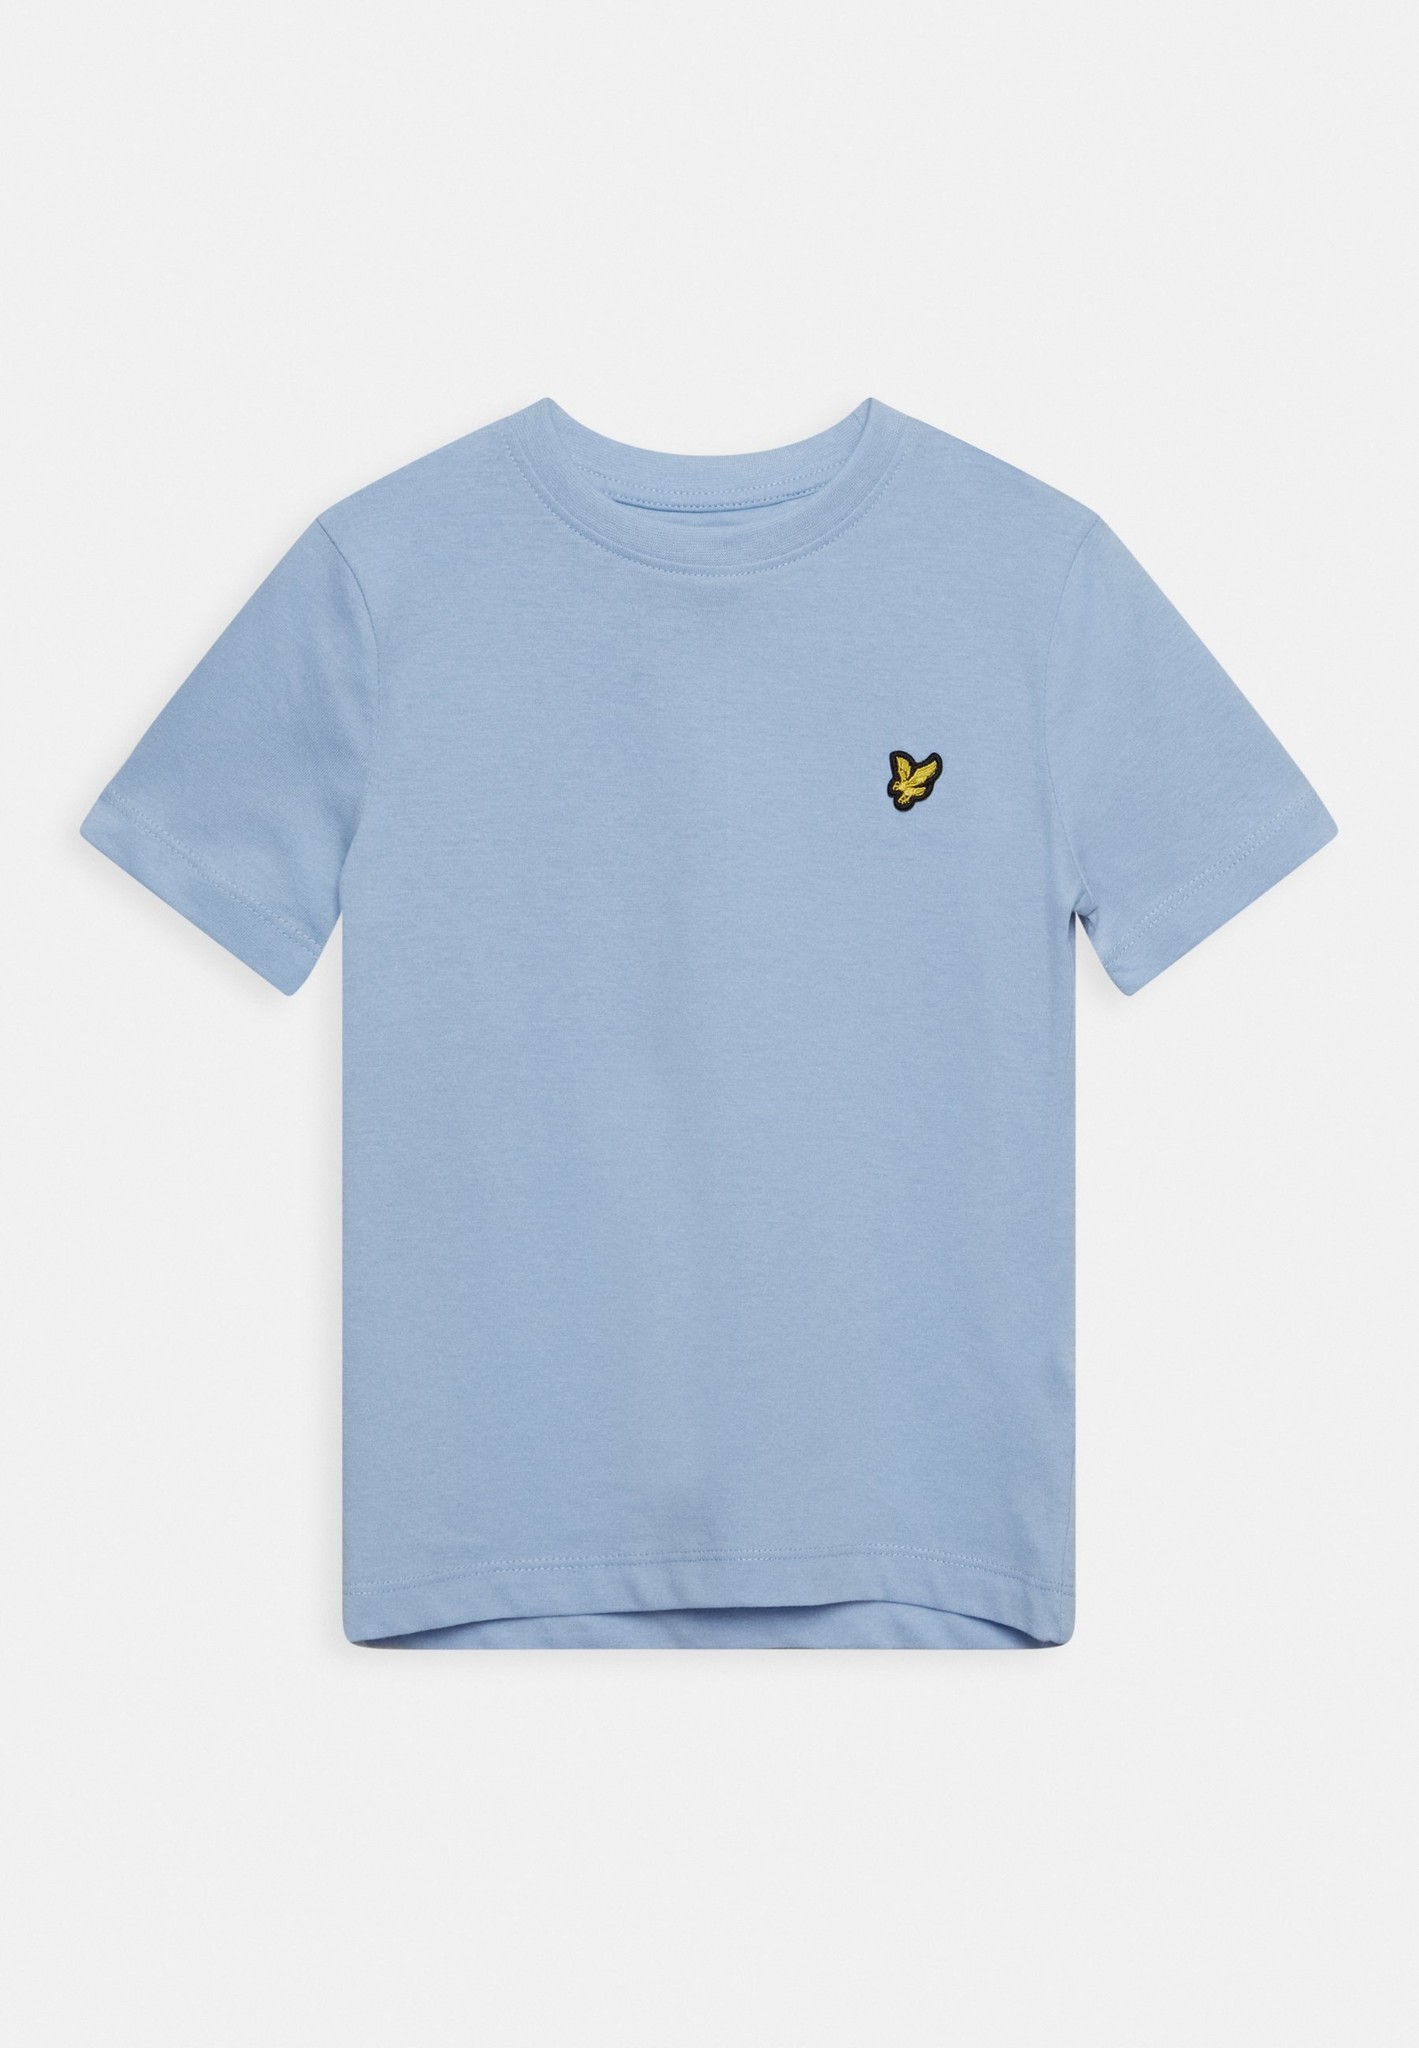 Lyle & Scott T-shirt - Chambray Blue